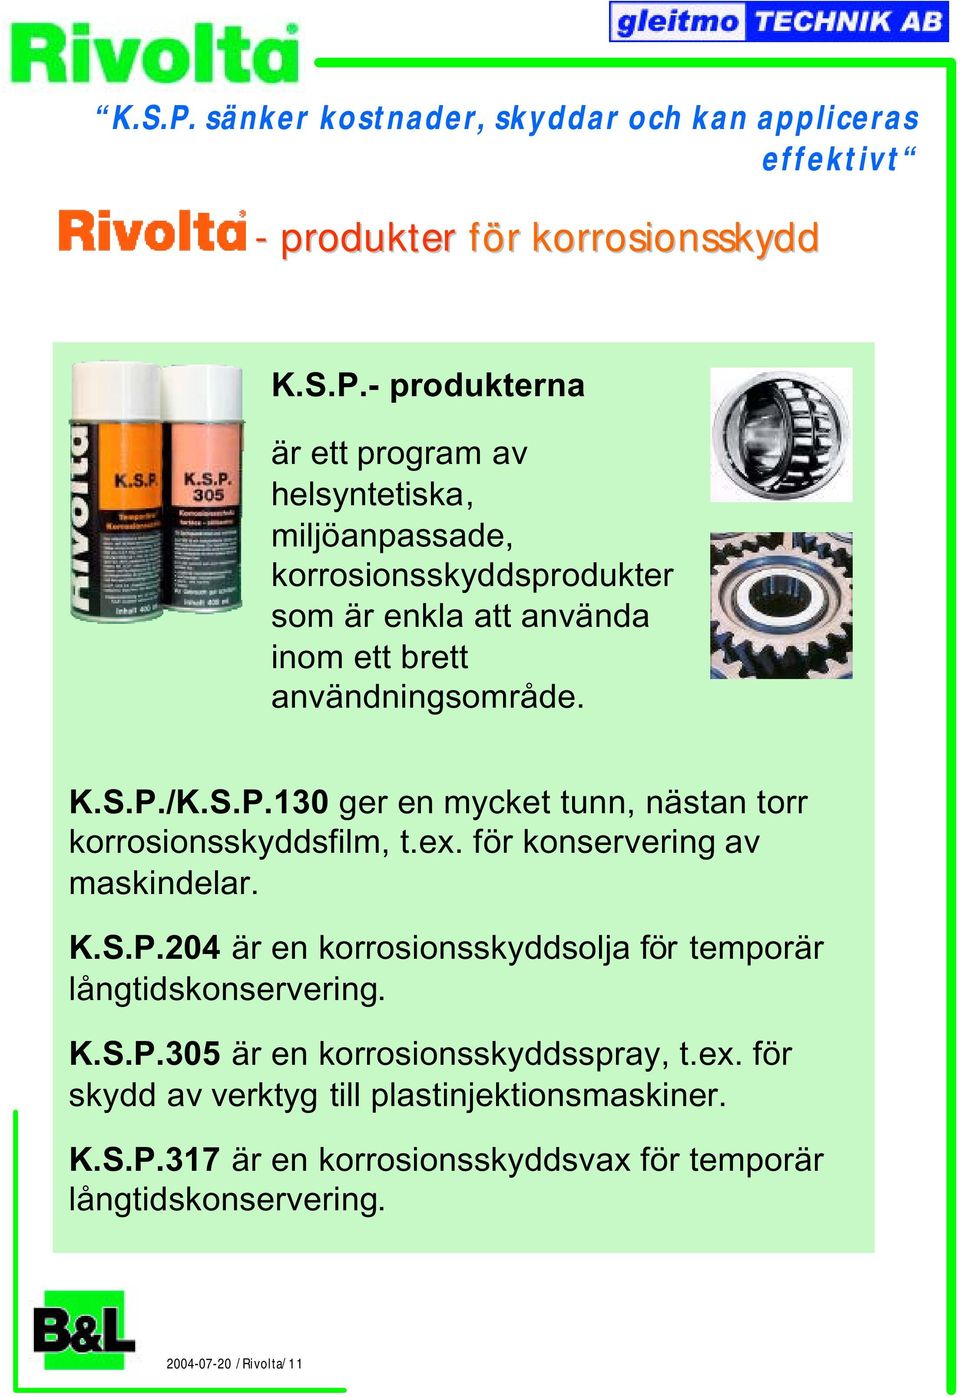 K.S.P.305 är en korrosionsskyddsspray, t.ex. för skydd av verktyg till plastinjektionsmaskiner. K.S.P.317 är en korrosionsskyddsvax för temporär långtidskonservering.